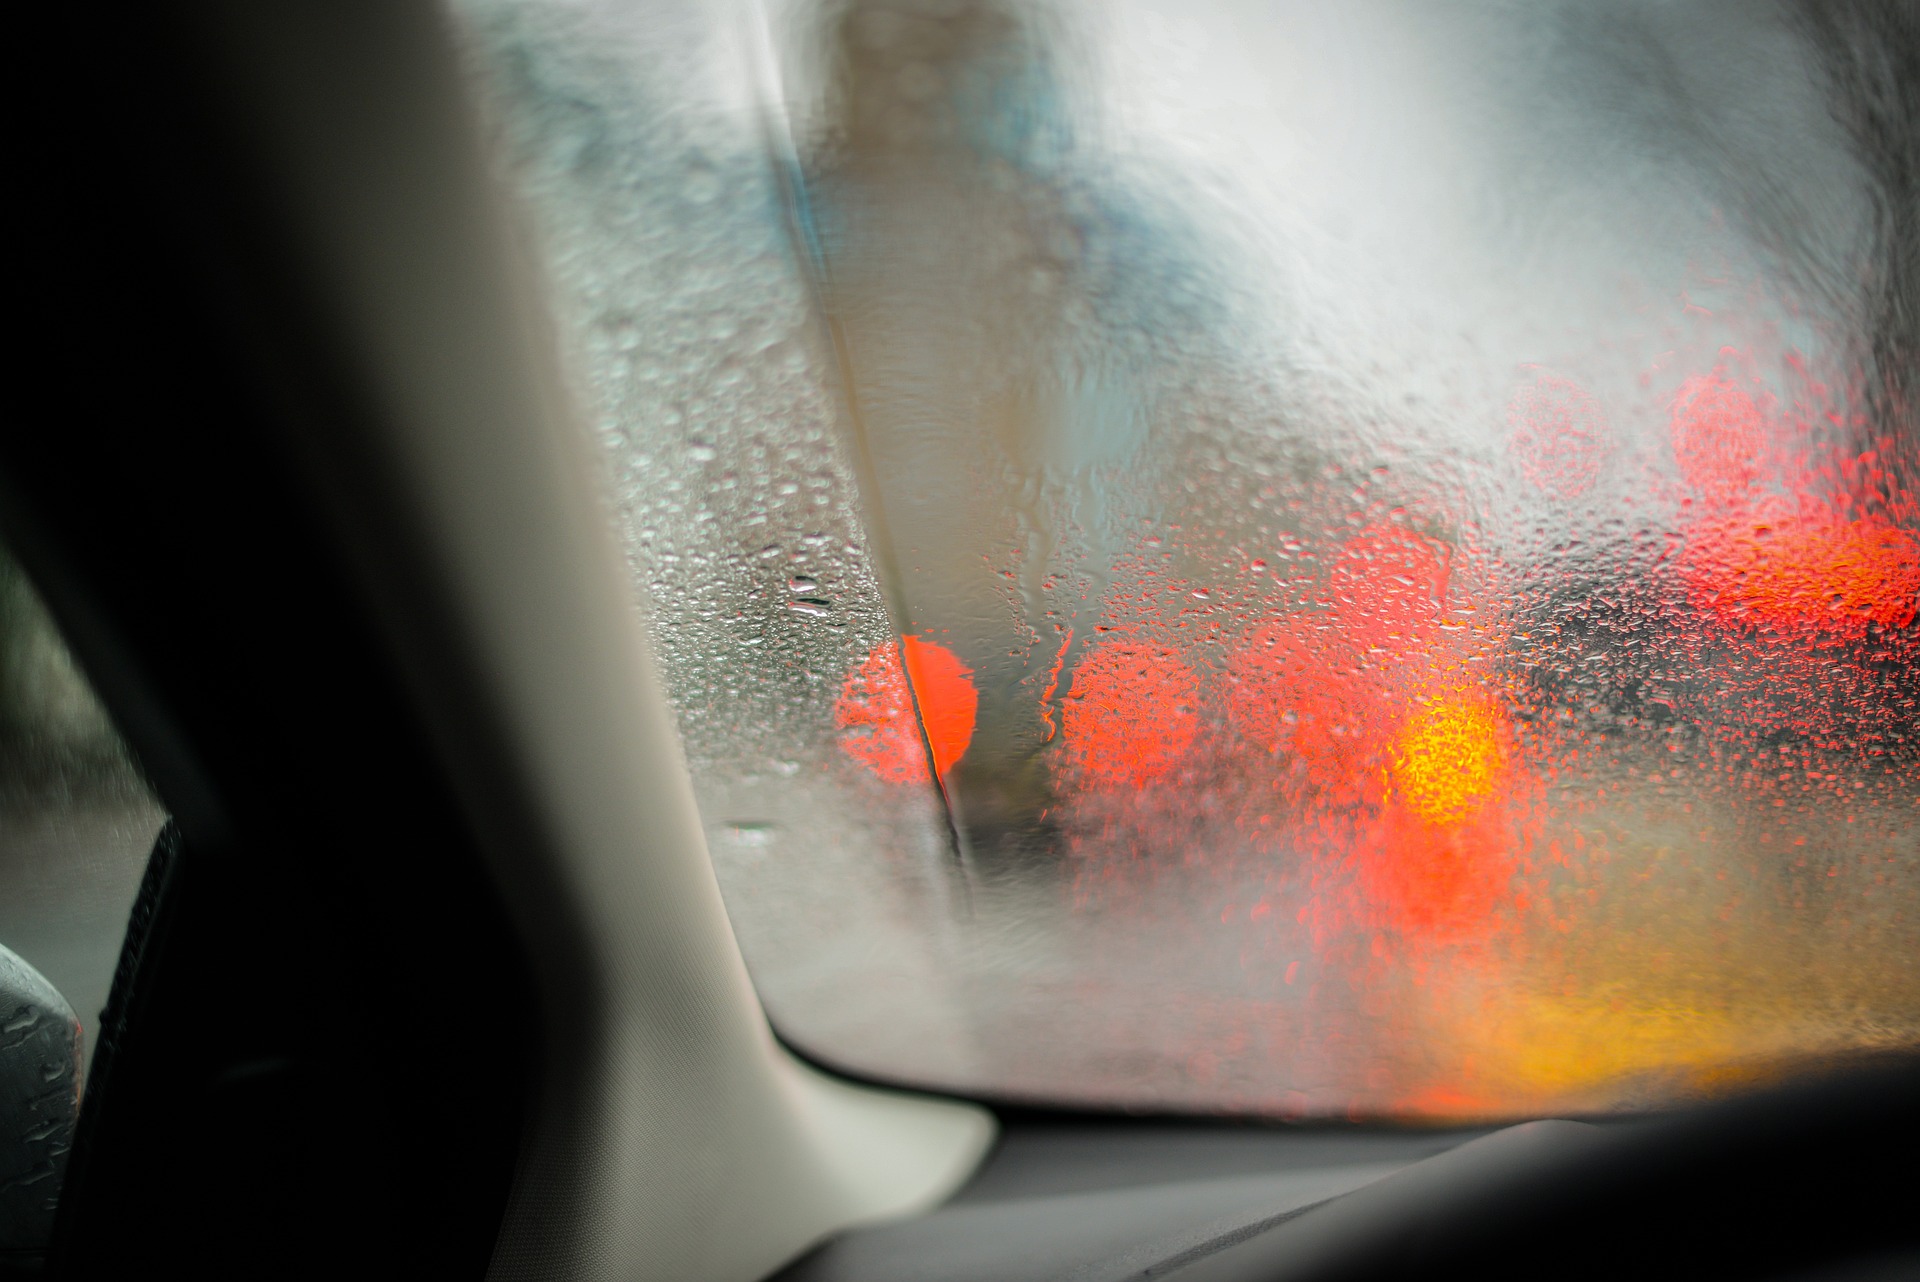 Bis zu 60 Grad im Auto! Hilft Lackfarbe oder Fenster öffnen? ADAC deckt  Mythen auf